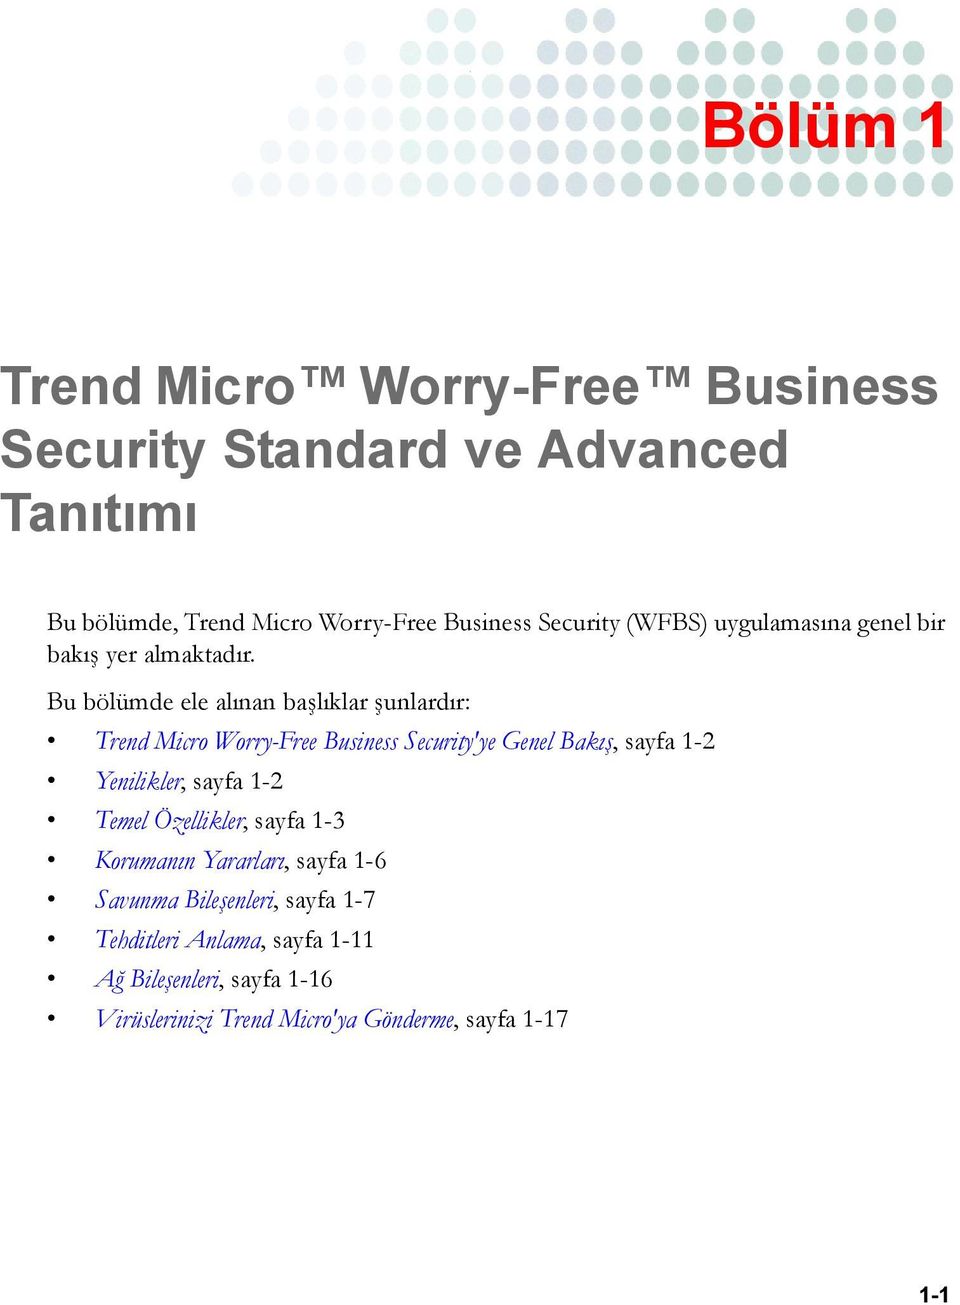 Bu bölümde ele alınan başlıklar şunlardır: Trend Micro Worry-Free Business Security'ye Genel Bakış, sayfa 1-2 Yenilikler, sayfa